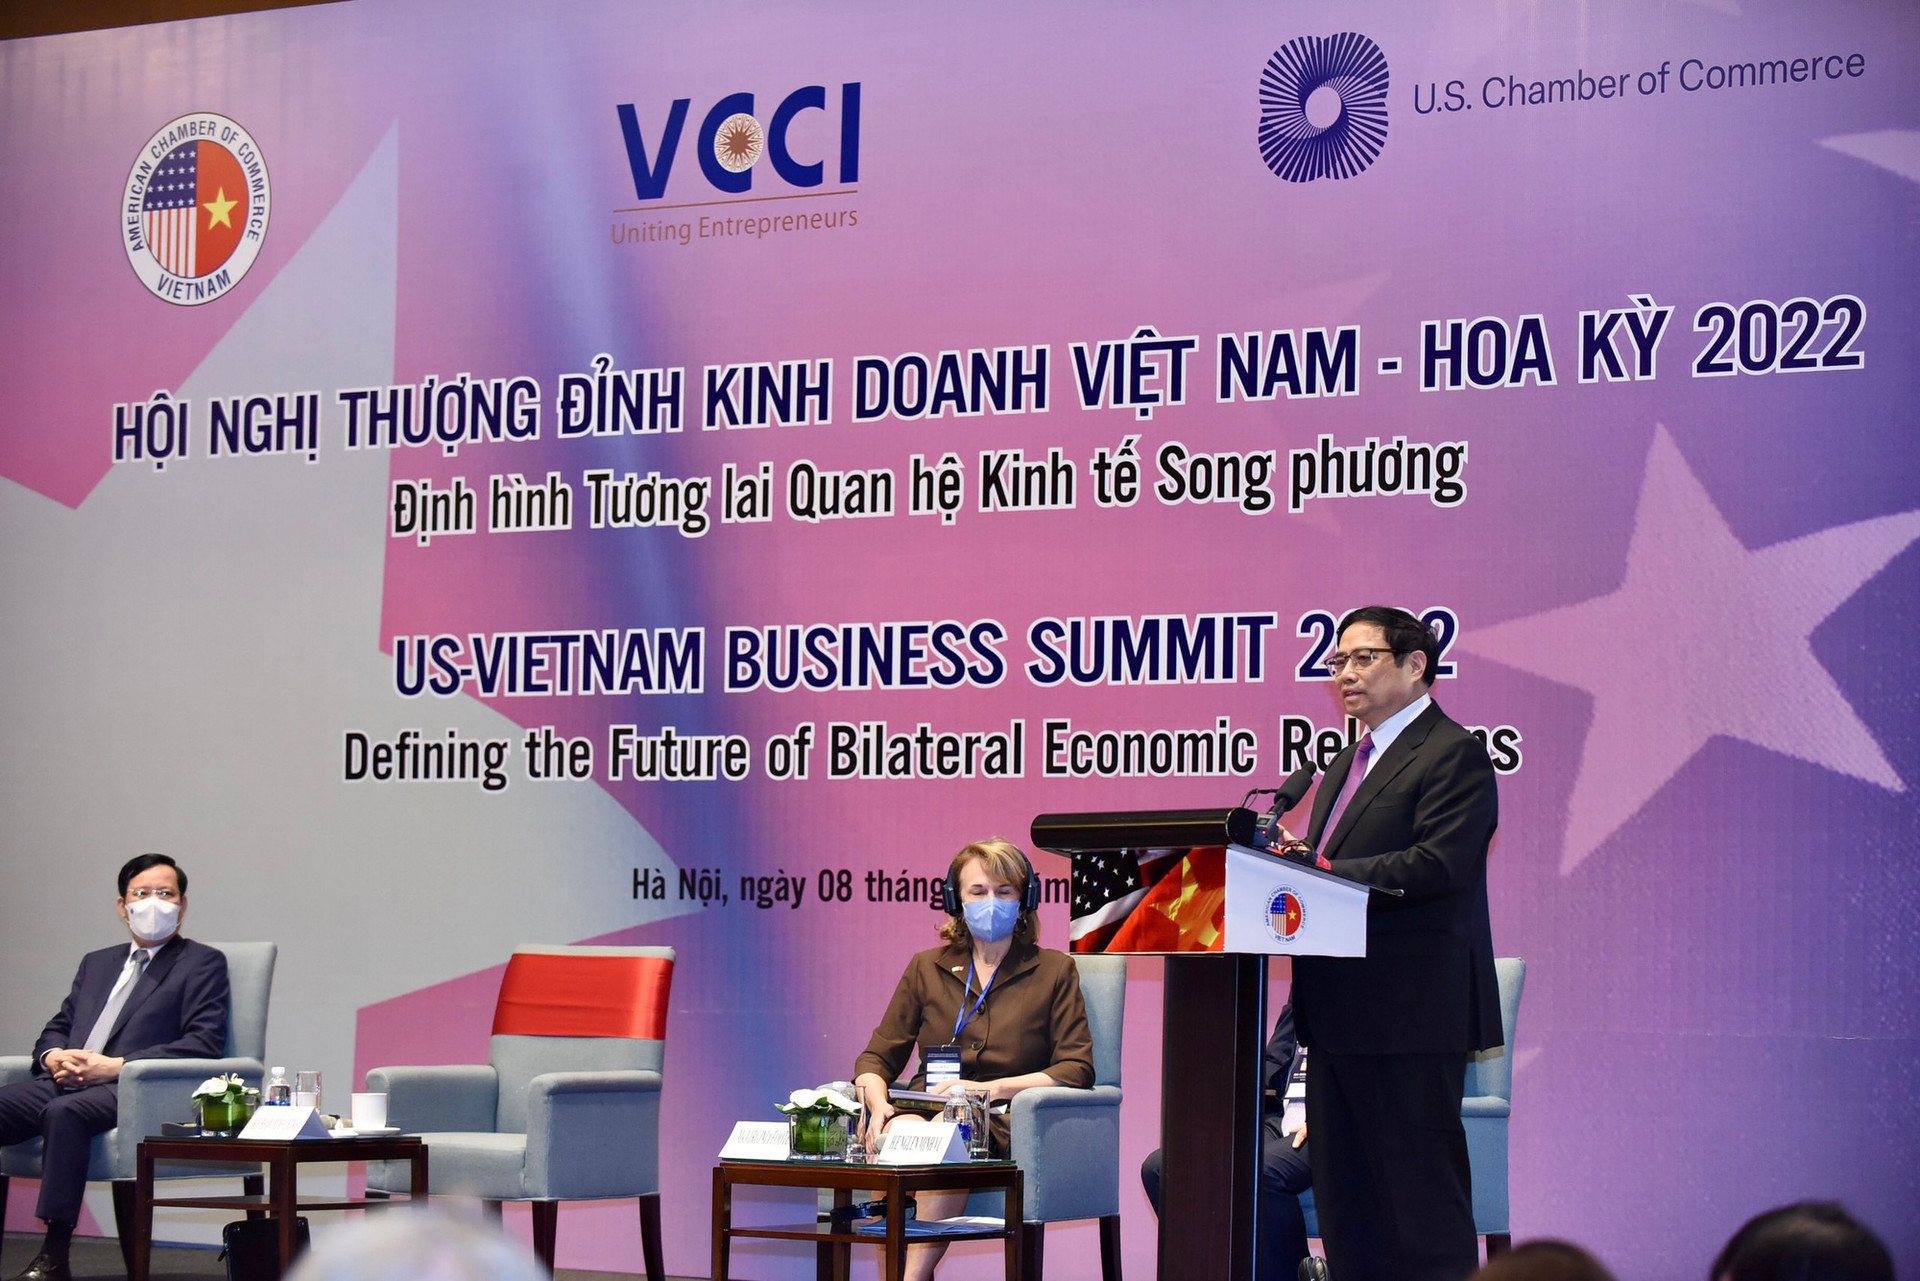 Thúc đẩy quan hệ Việt Nam - Hoa Kỳ với 'lợi ích hài hòa, rủi ro chia sẻ' - Ảnh 2.